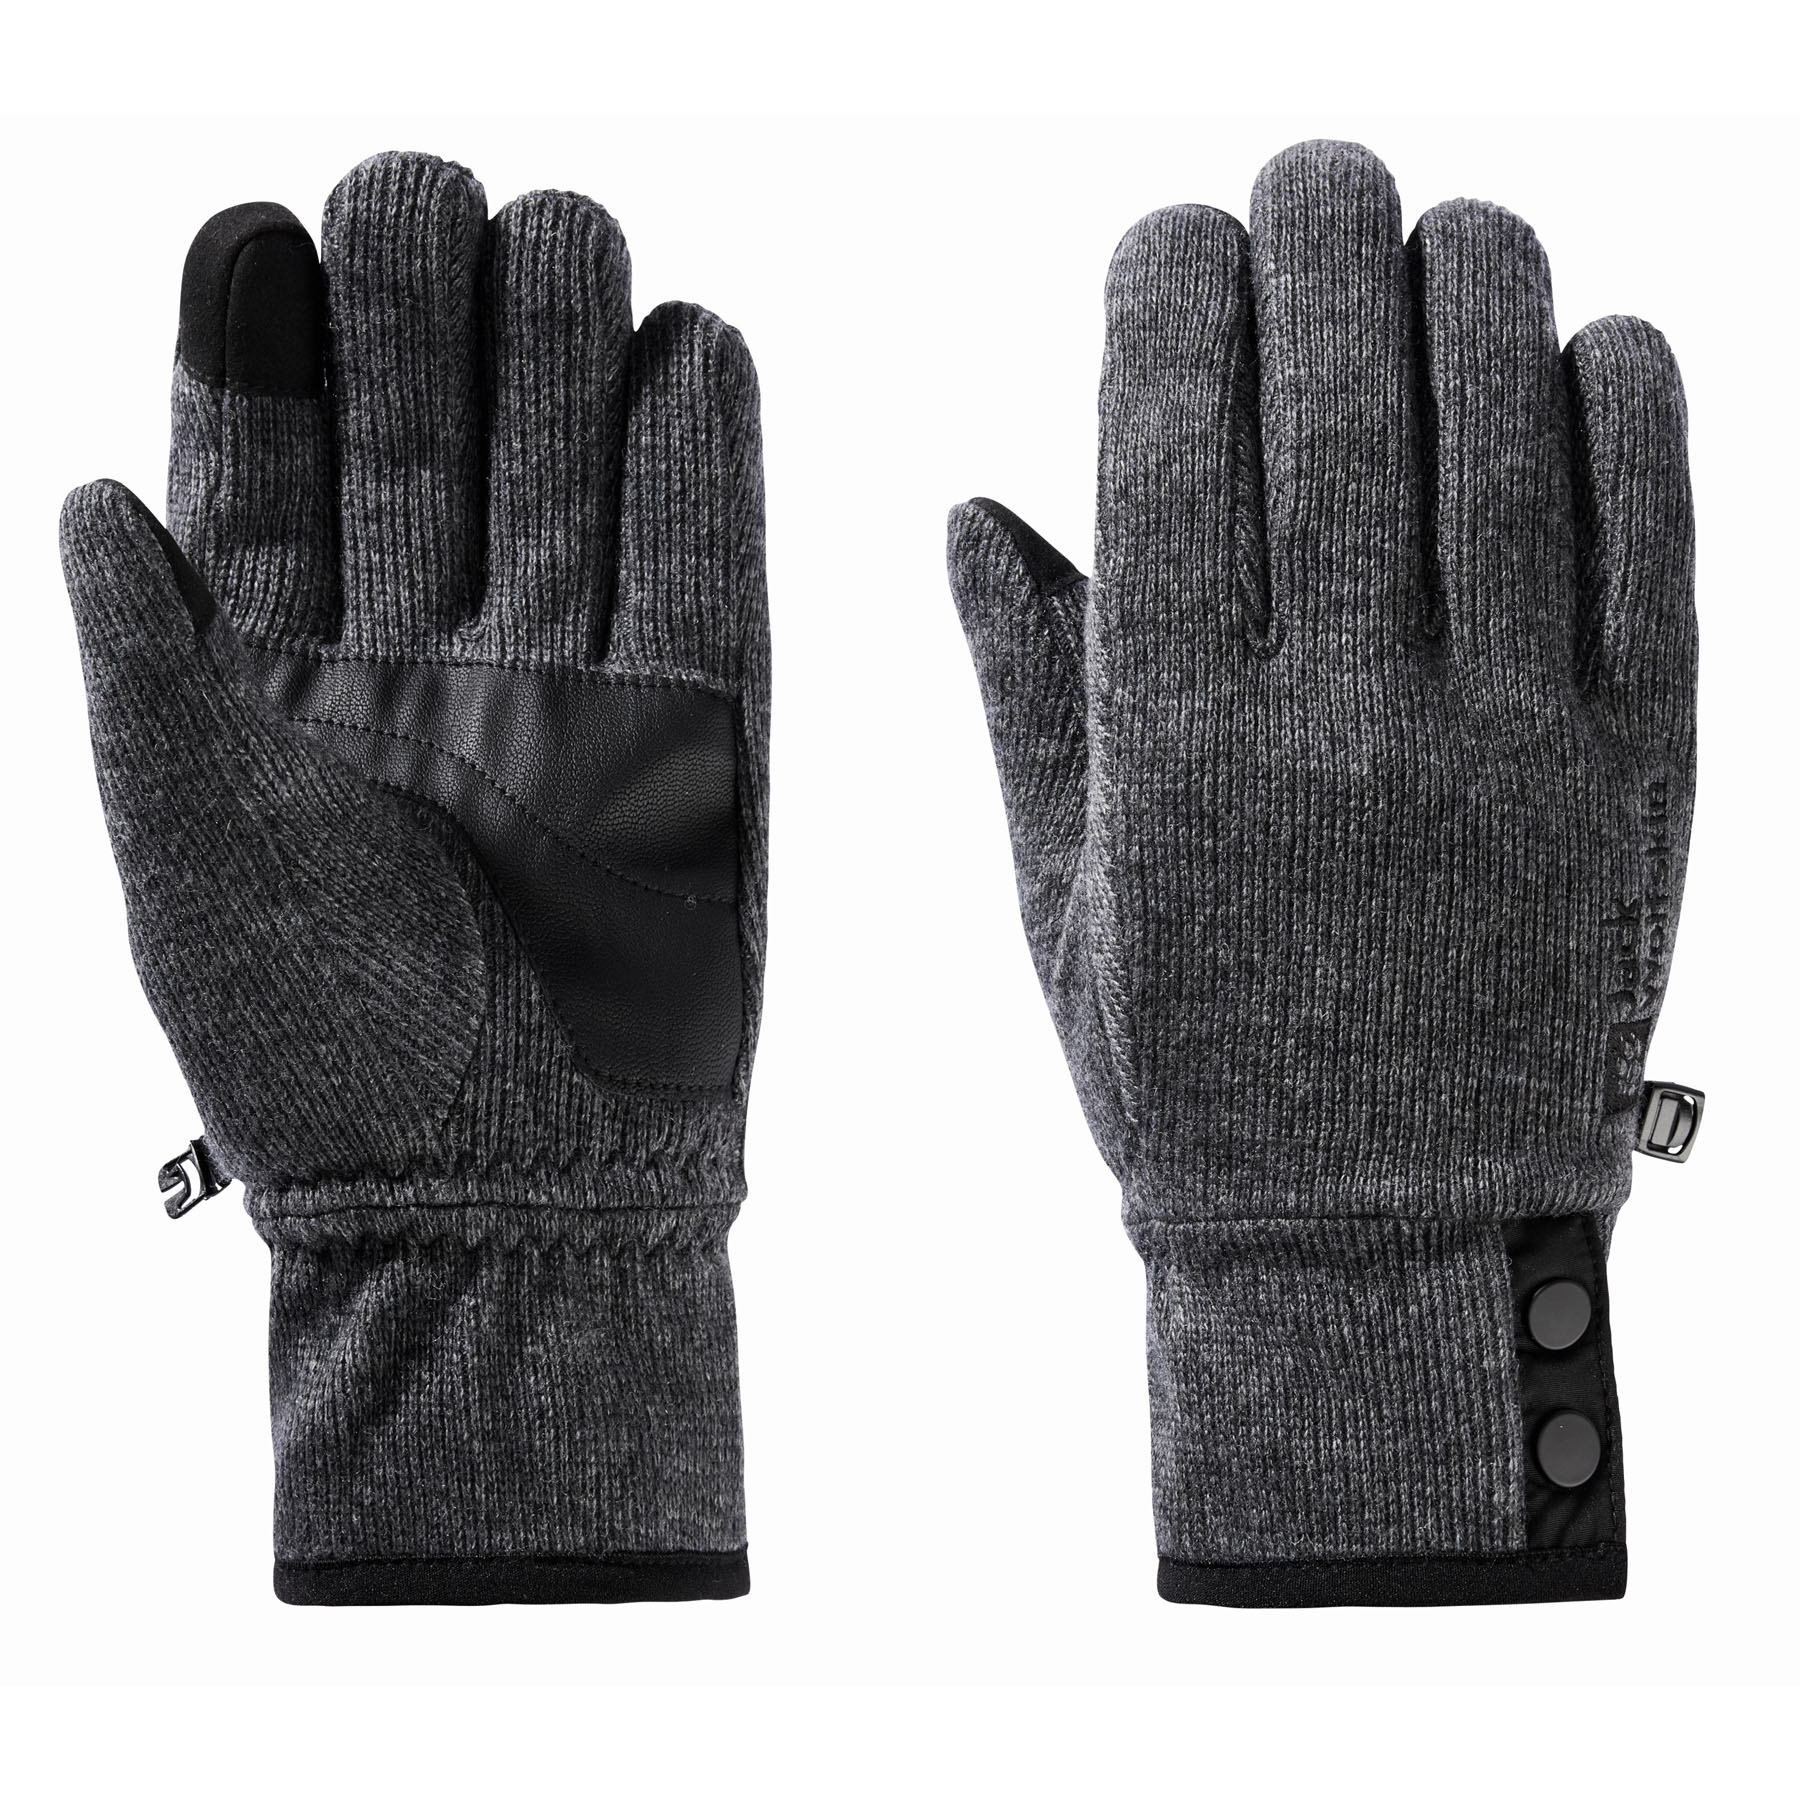 Rękawice polarowe Jack Wolfskin WINTER WOOL GLOVE dark grey - XS